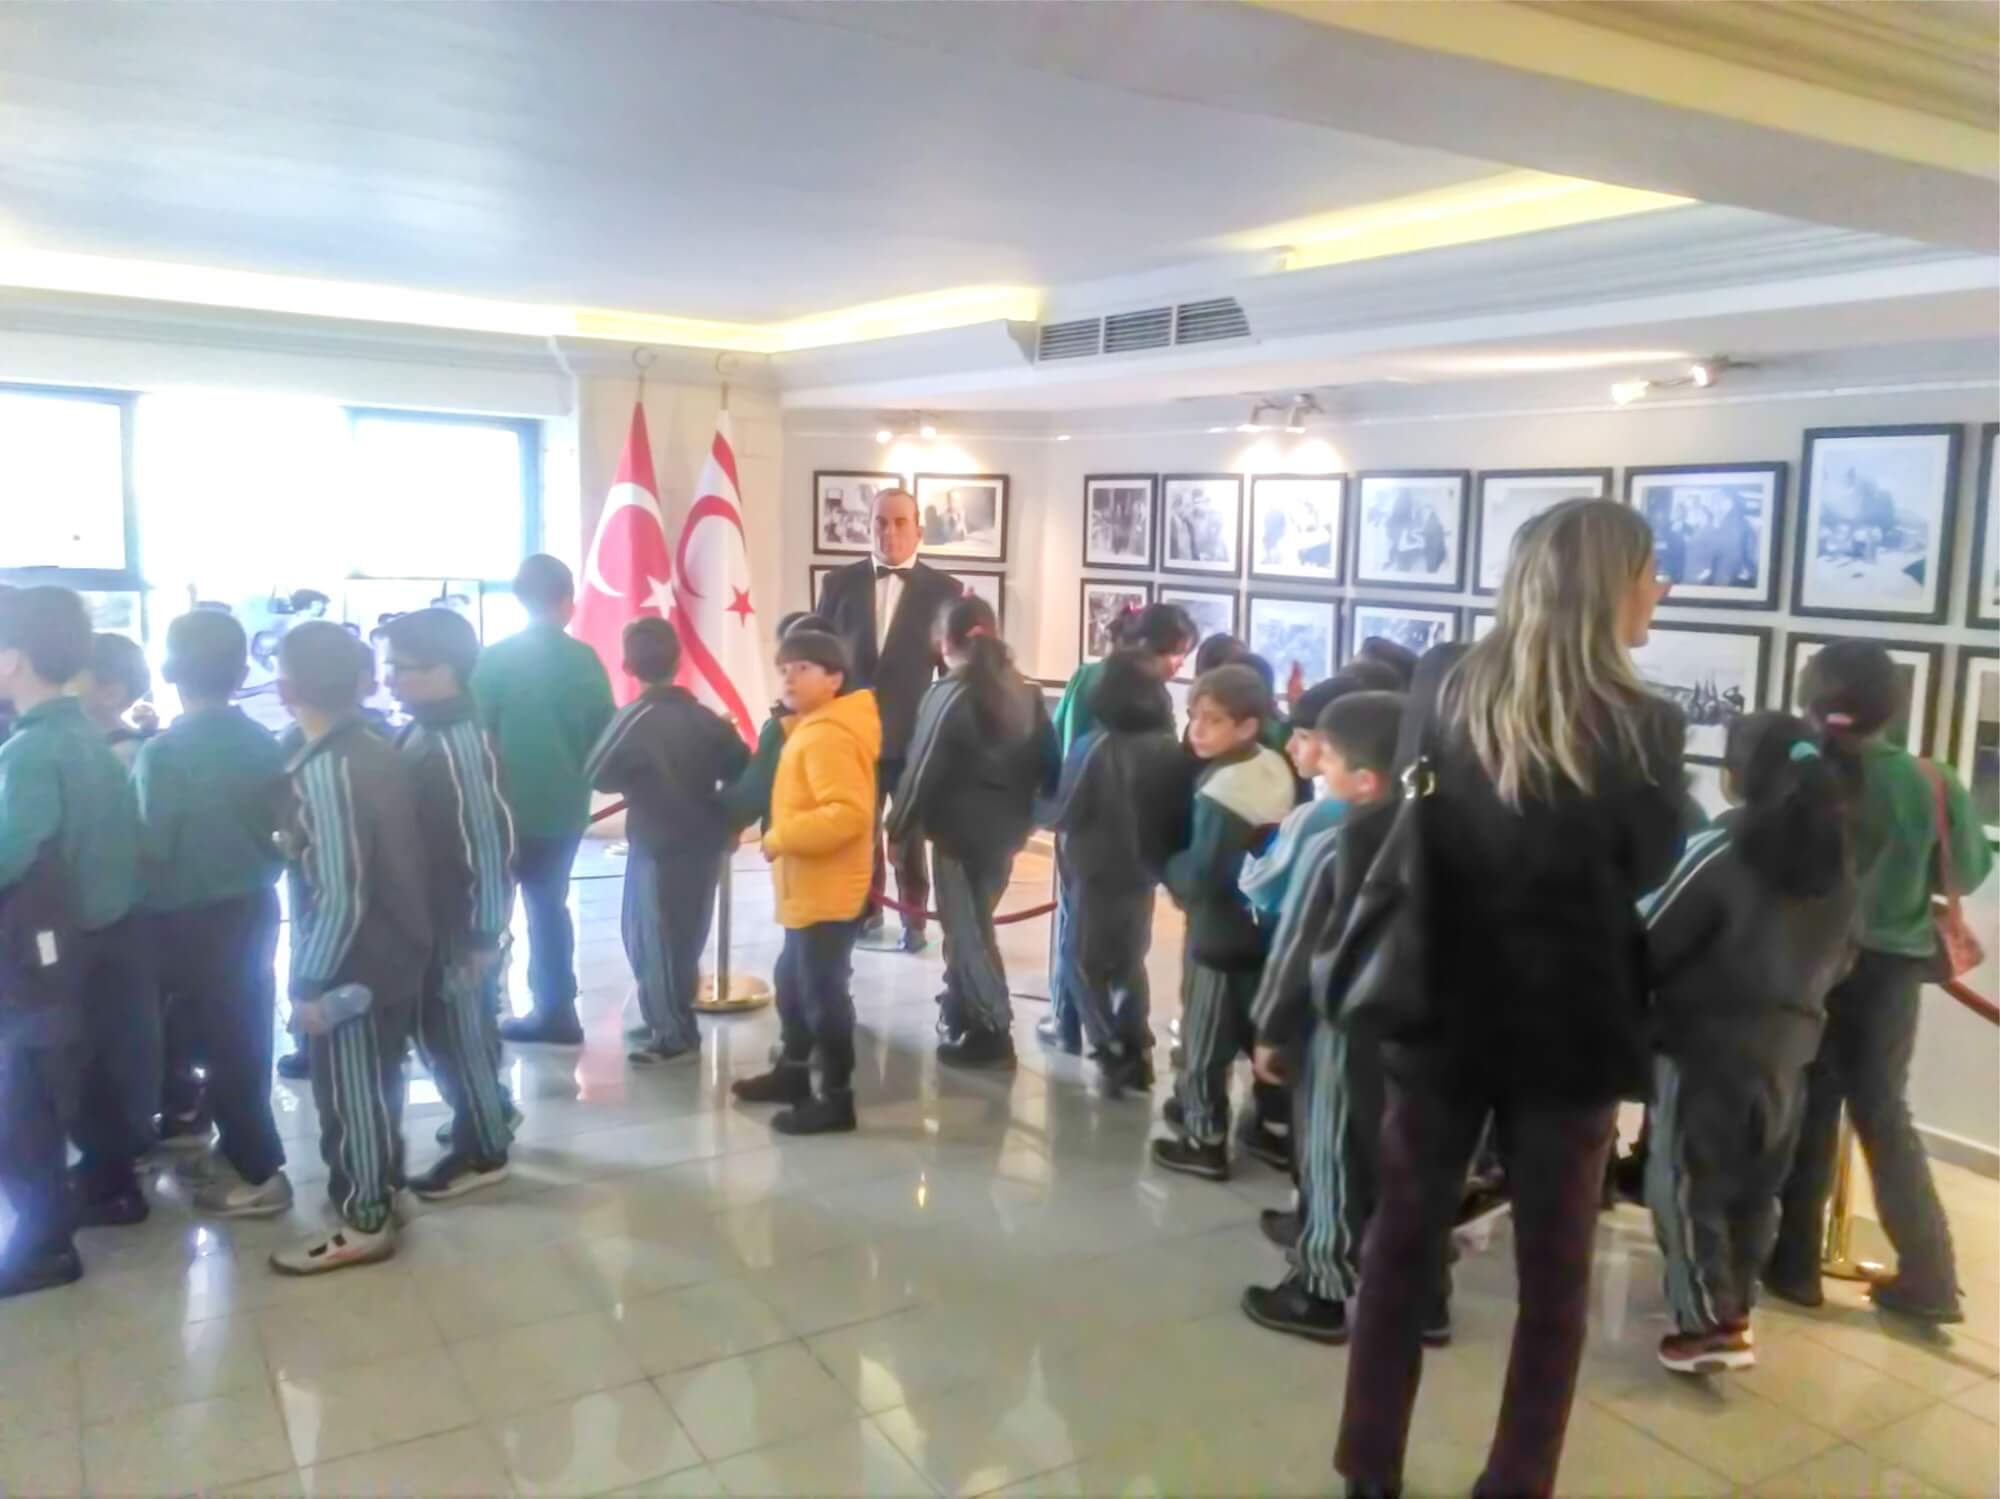 Çağlayan Cumhuriyet Primary School Students visited the Exhibition themed “Dr. Fazıl Küçük and National Struggle”